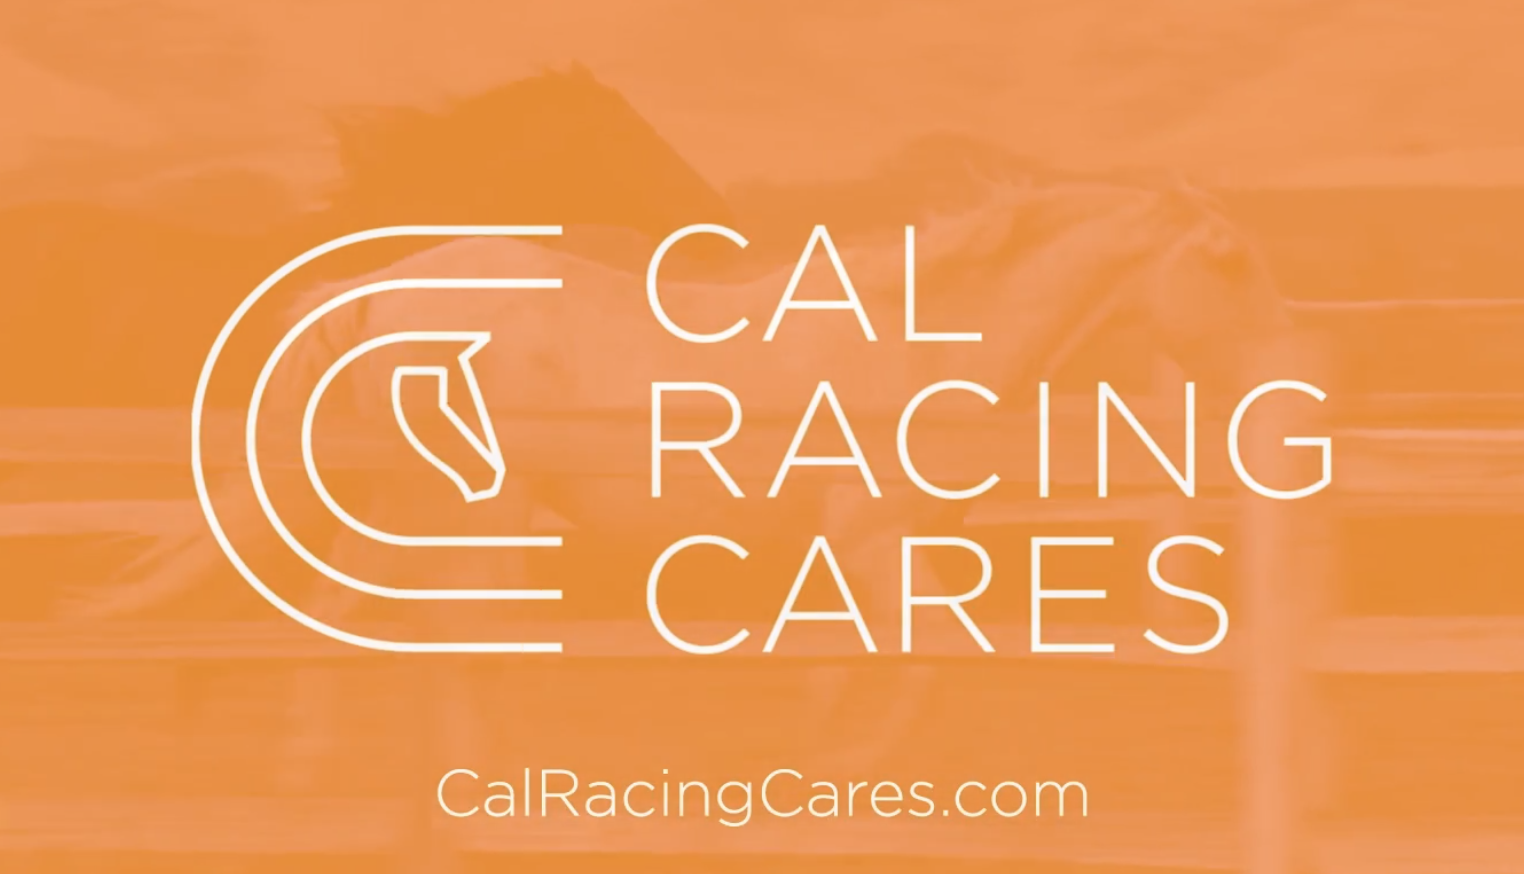 Cal Racing Cares